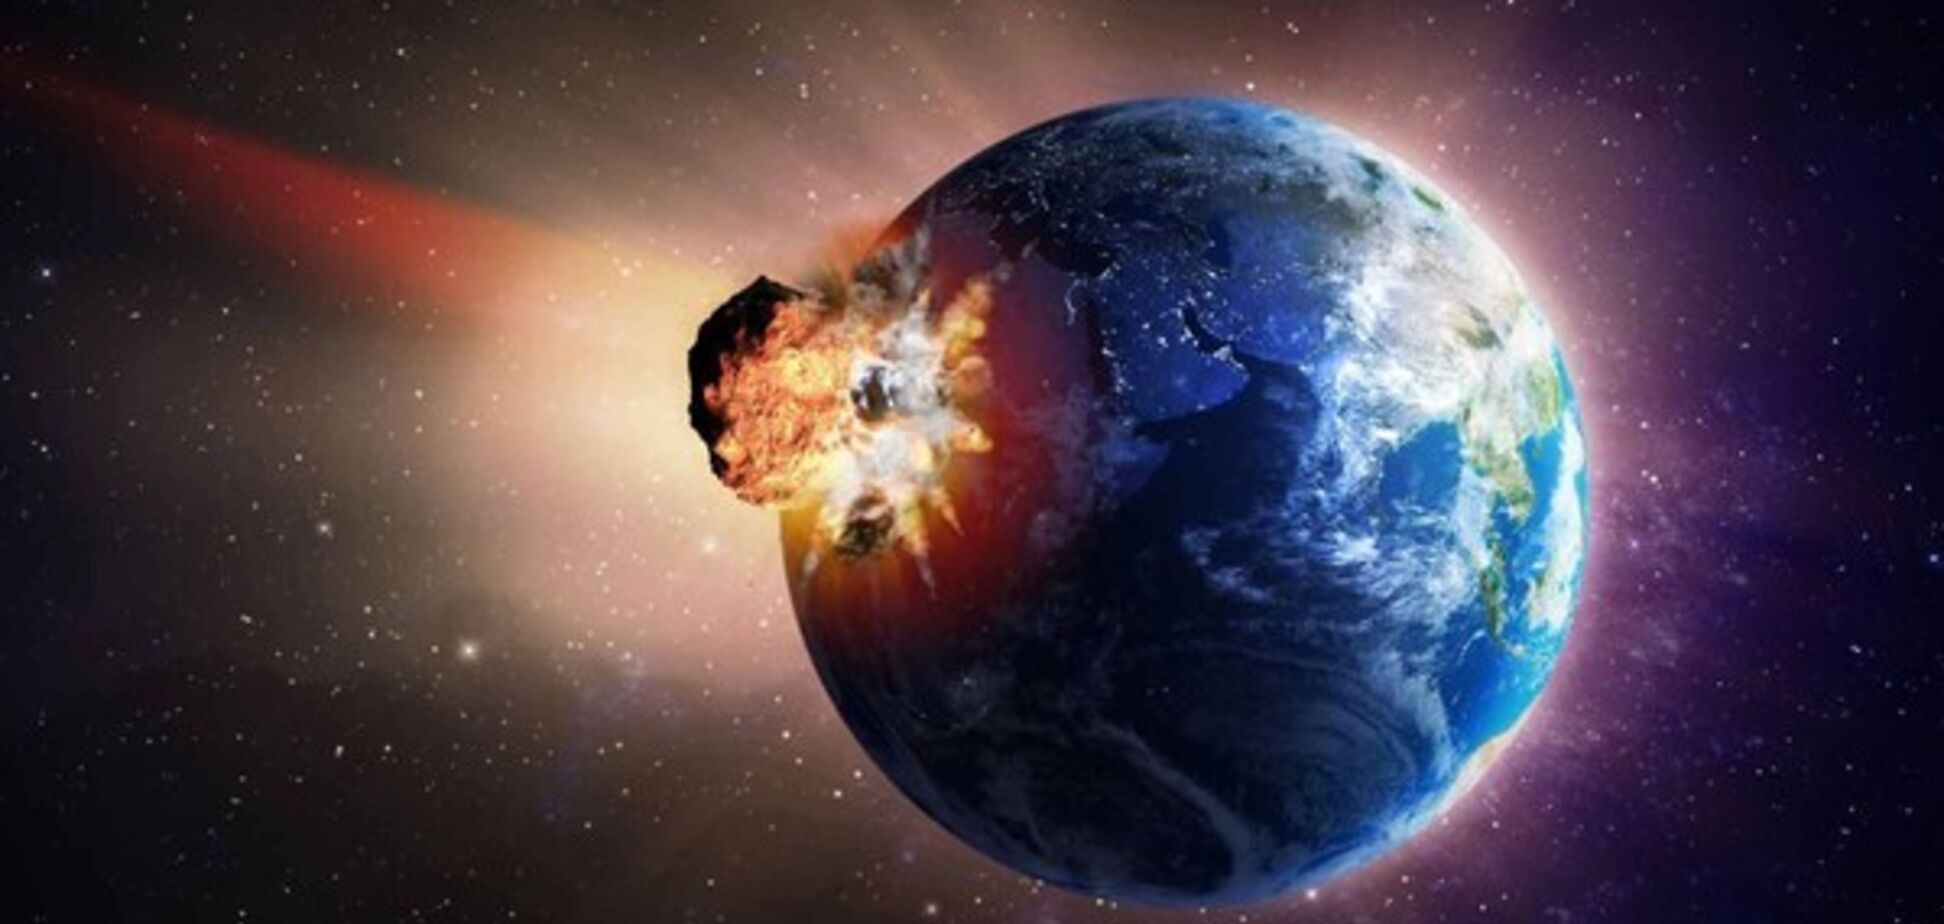 К Земле мчится астероид размером с футбольное поле: названа дата 'столкновения'